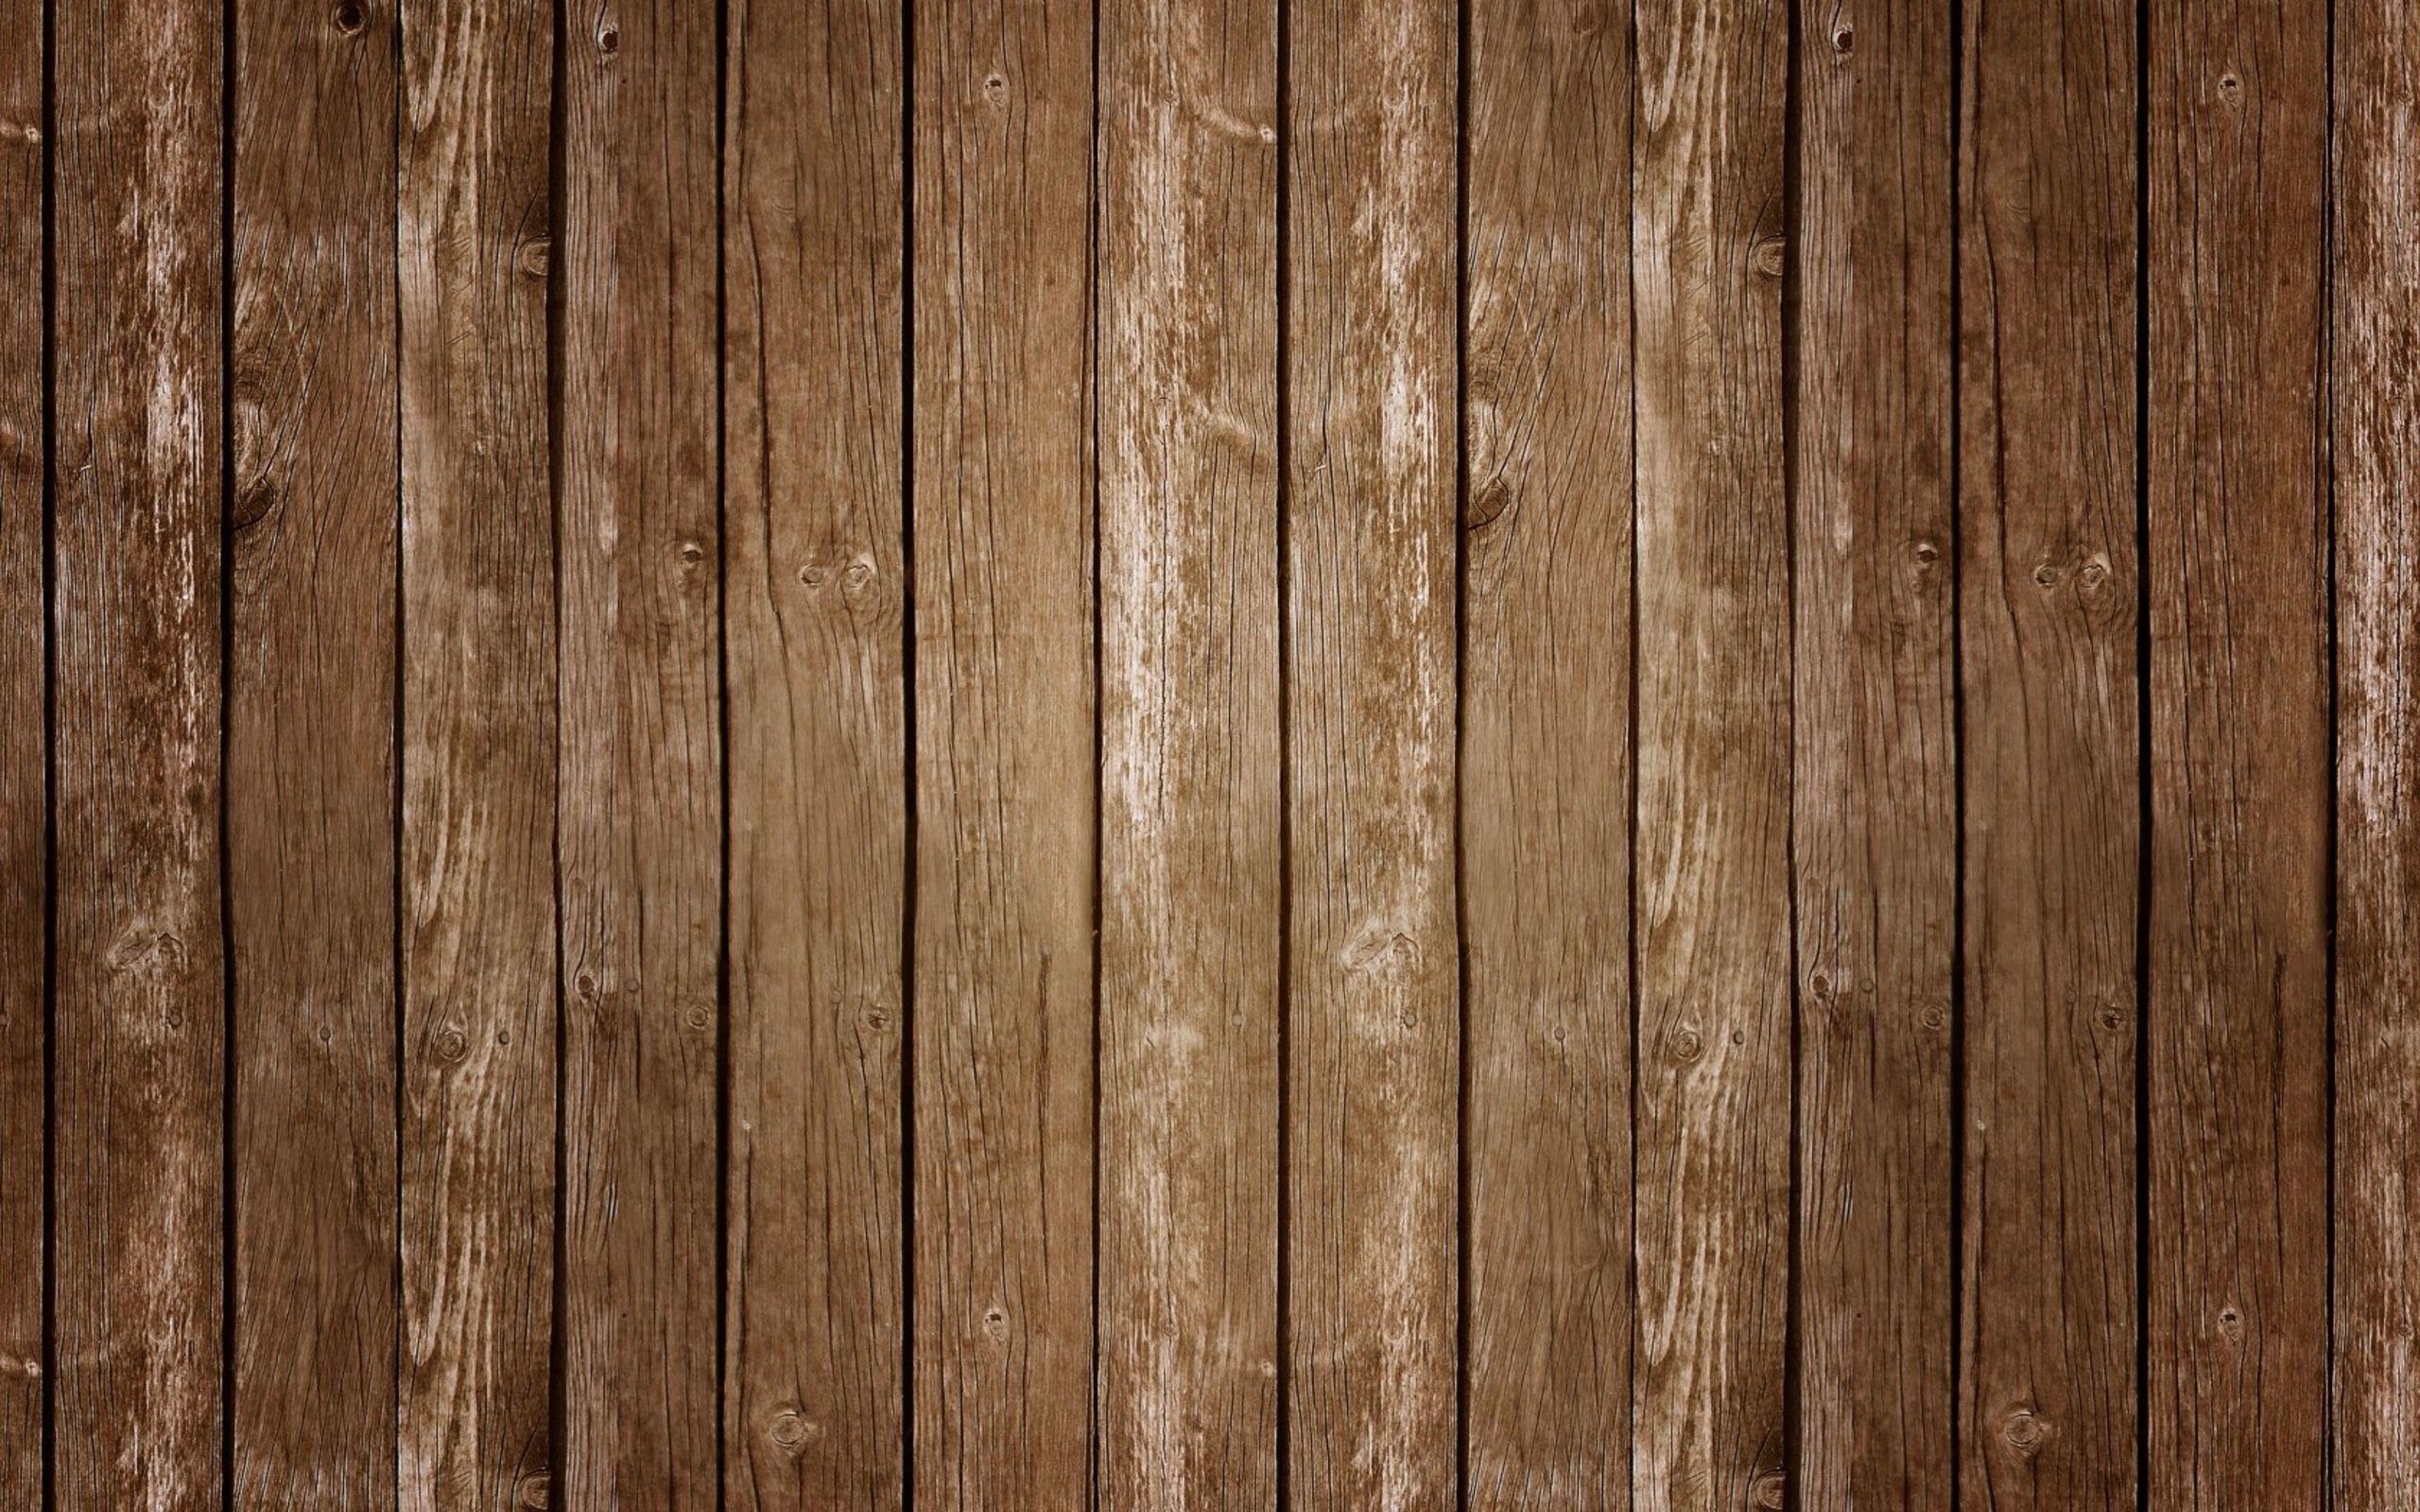 Hình nền gỗ đẹp: Hình nền gỗ đẹp vừa đơn giản nhưng cũng rất thu hút. Với các màu sắc và vân gỗ tuyệt đẹp, nó thể hiện ra sự gốc gác và đậm chất của thiên nhiên. Tạo ra một sức hút đặc biệt cho màn hình của bạn, cho bạn những giây phút thư giãn và yên tĩnh.